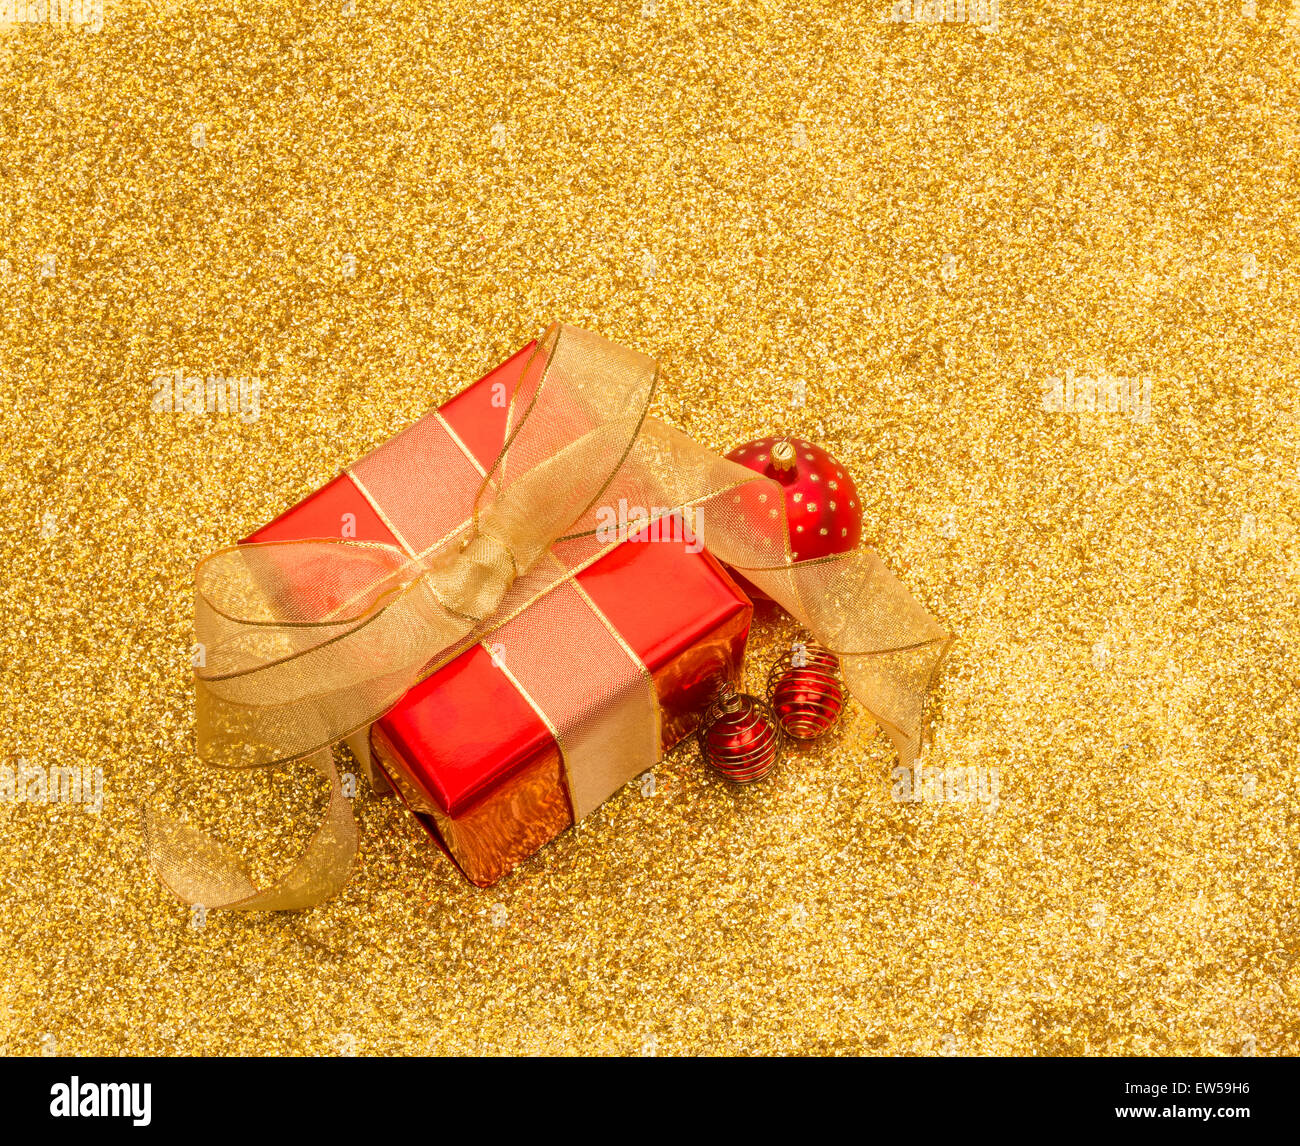 Boîte cadeau rouge et or avec boules ruban sur une gold glitter background with copy space Banque D'Images